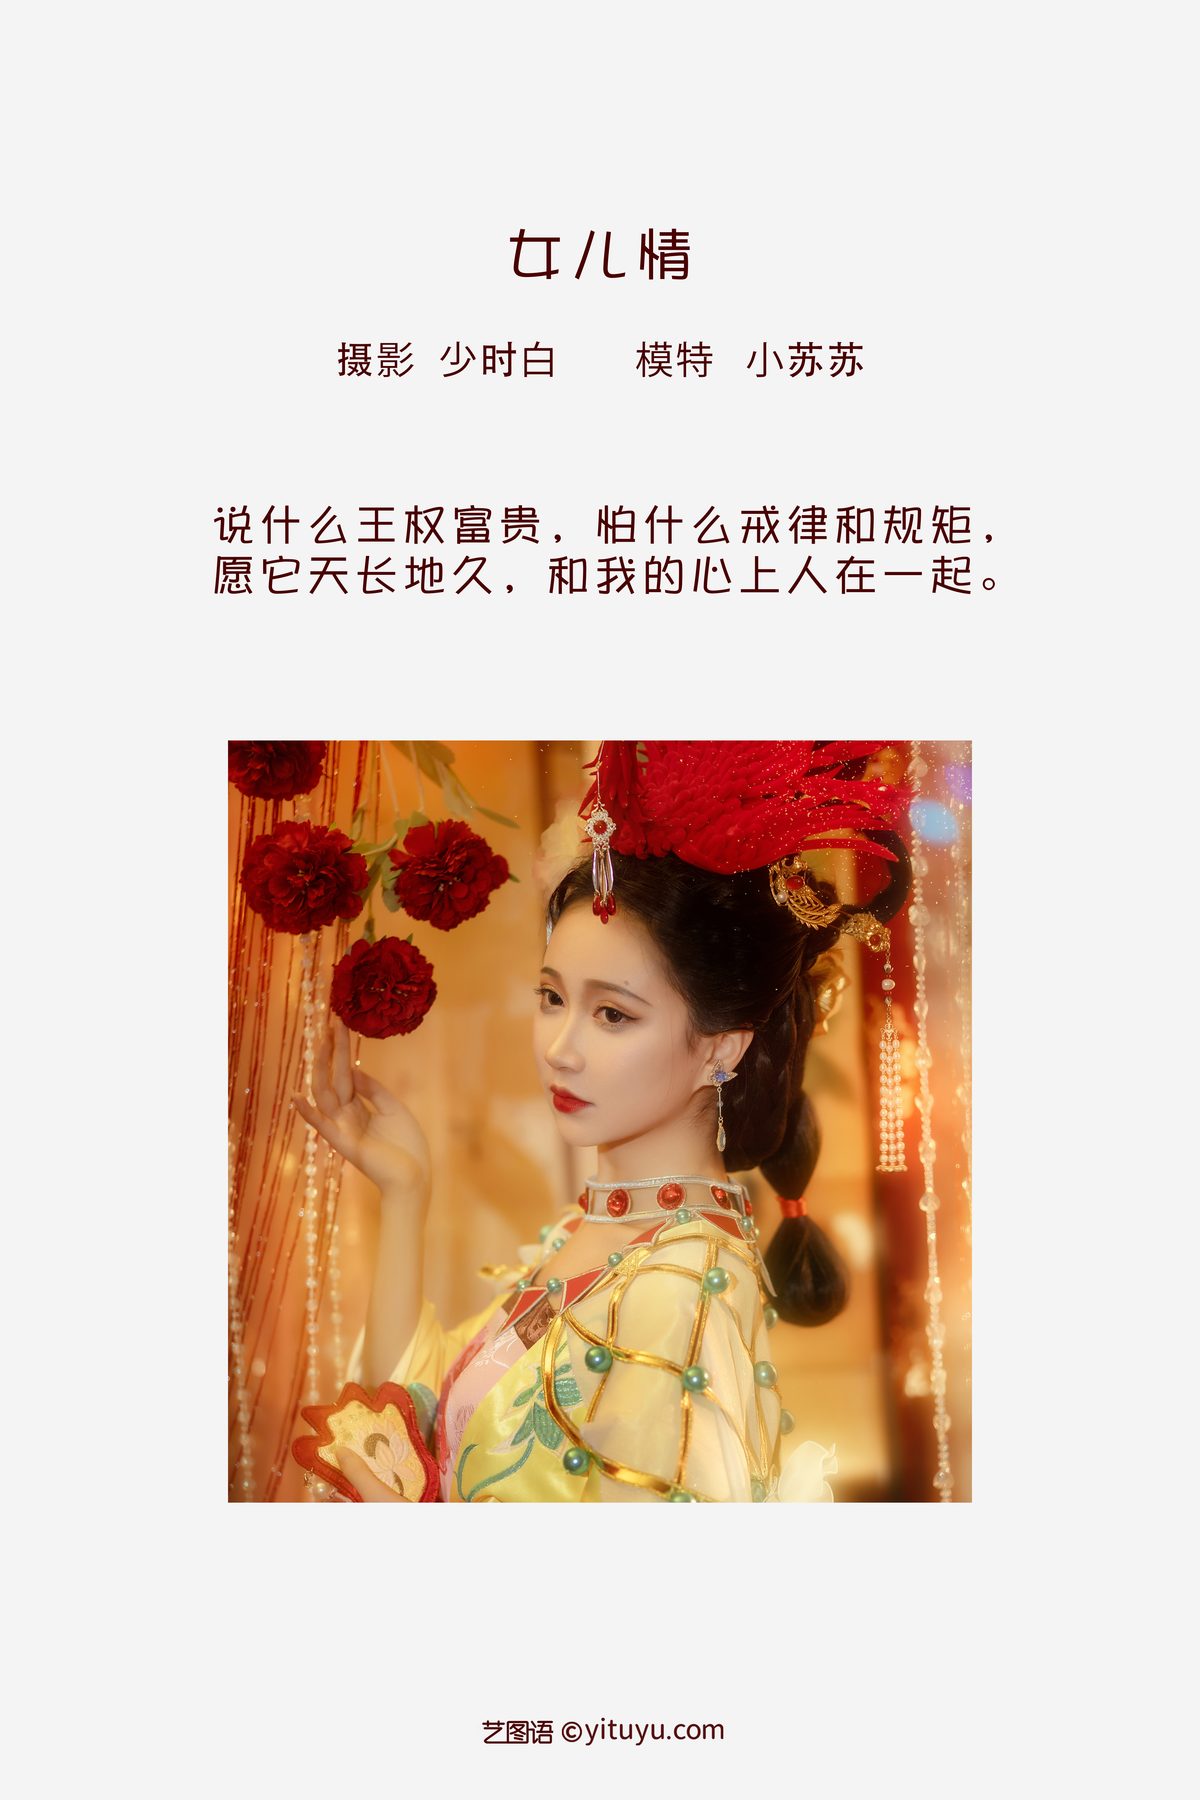 YiTuYu艺图语 Vol 3487 Qi Luo Sheng De Xiao Su Su 0001 5694252303.jpg